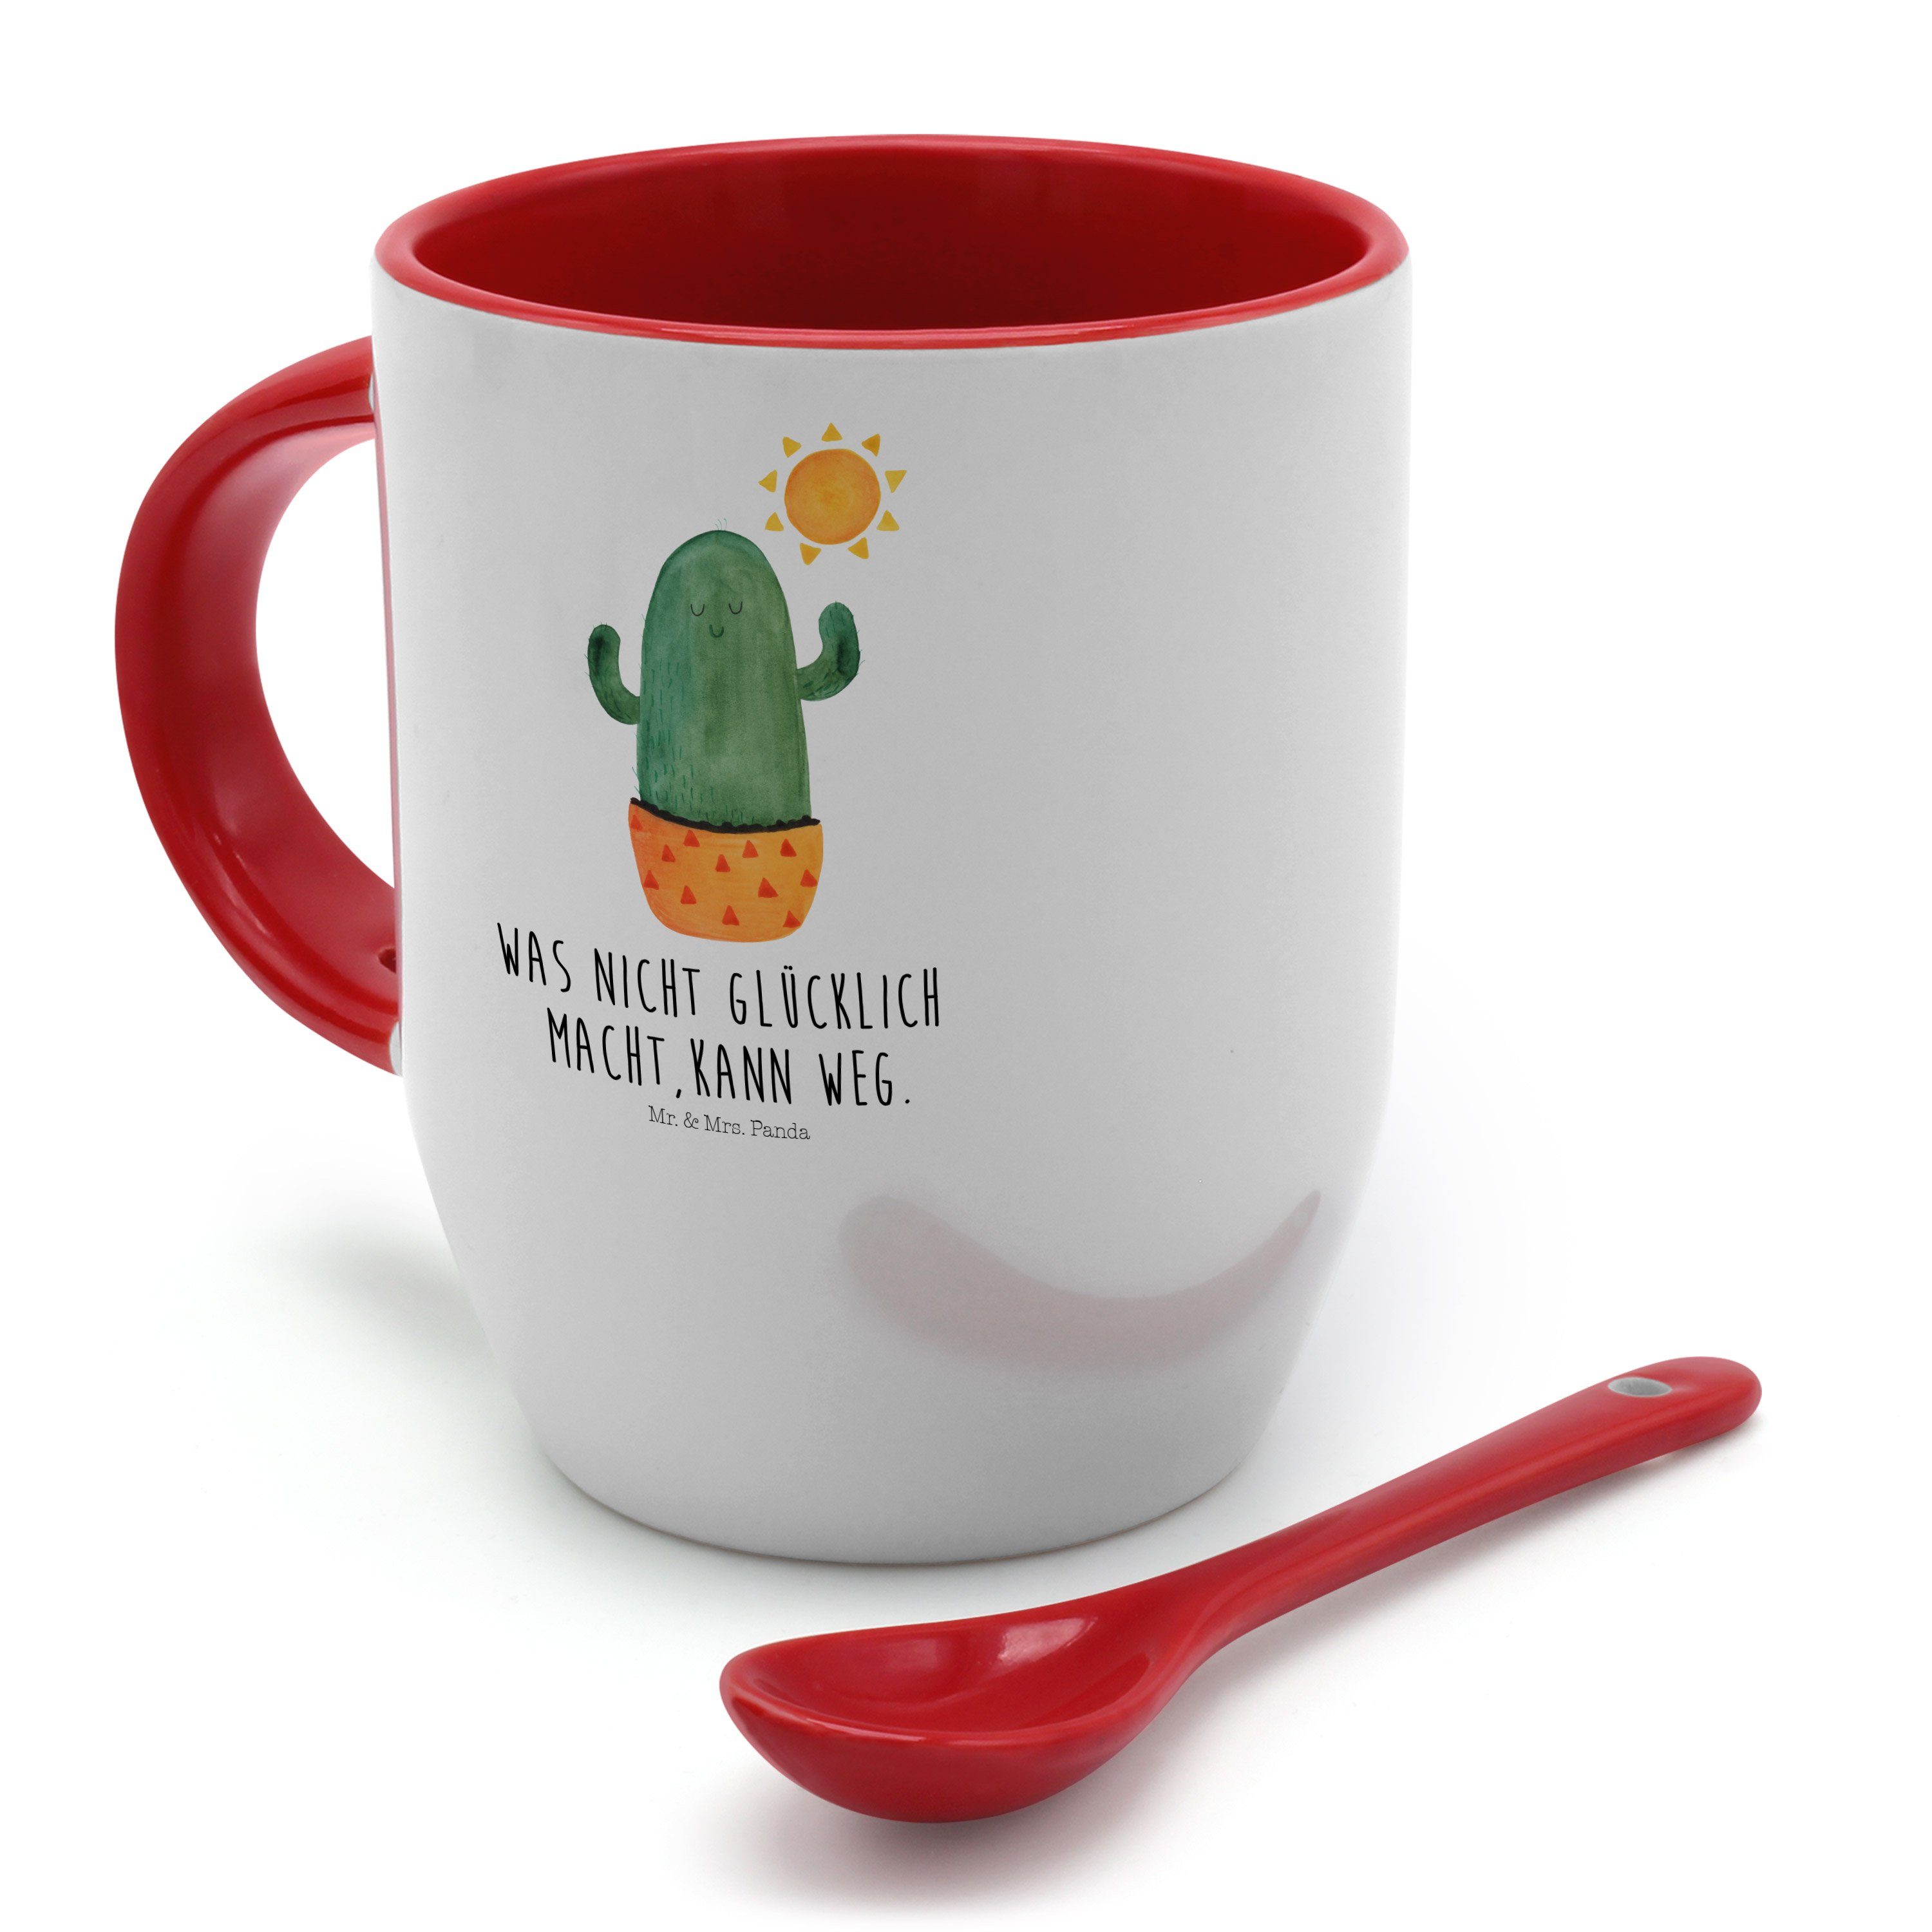 Tasse Spruch, Kakt, - - Geschenk, Tasse, Weiß Keramik Tasse Kaktus Sonnenanbeter Mrs. Mr. & Panda mit